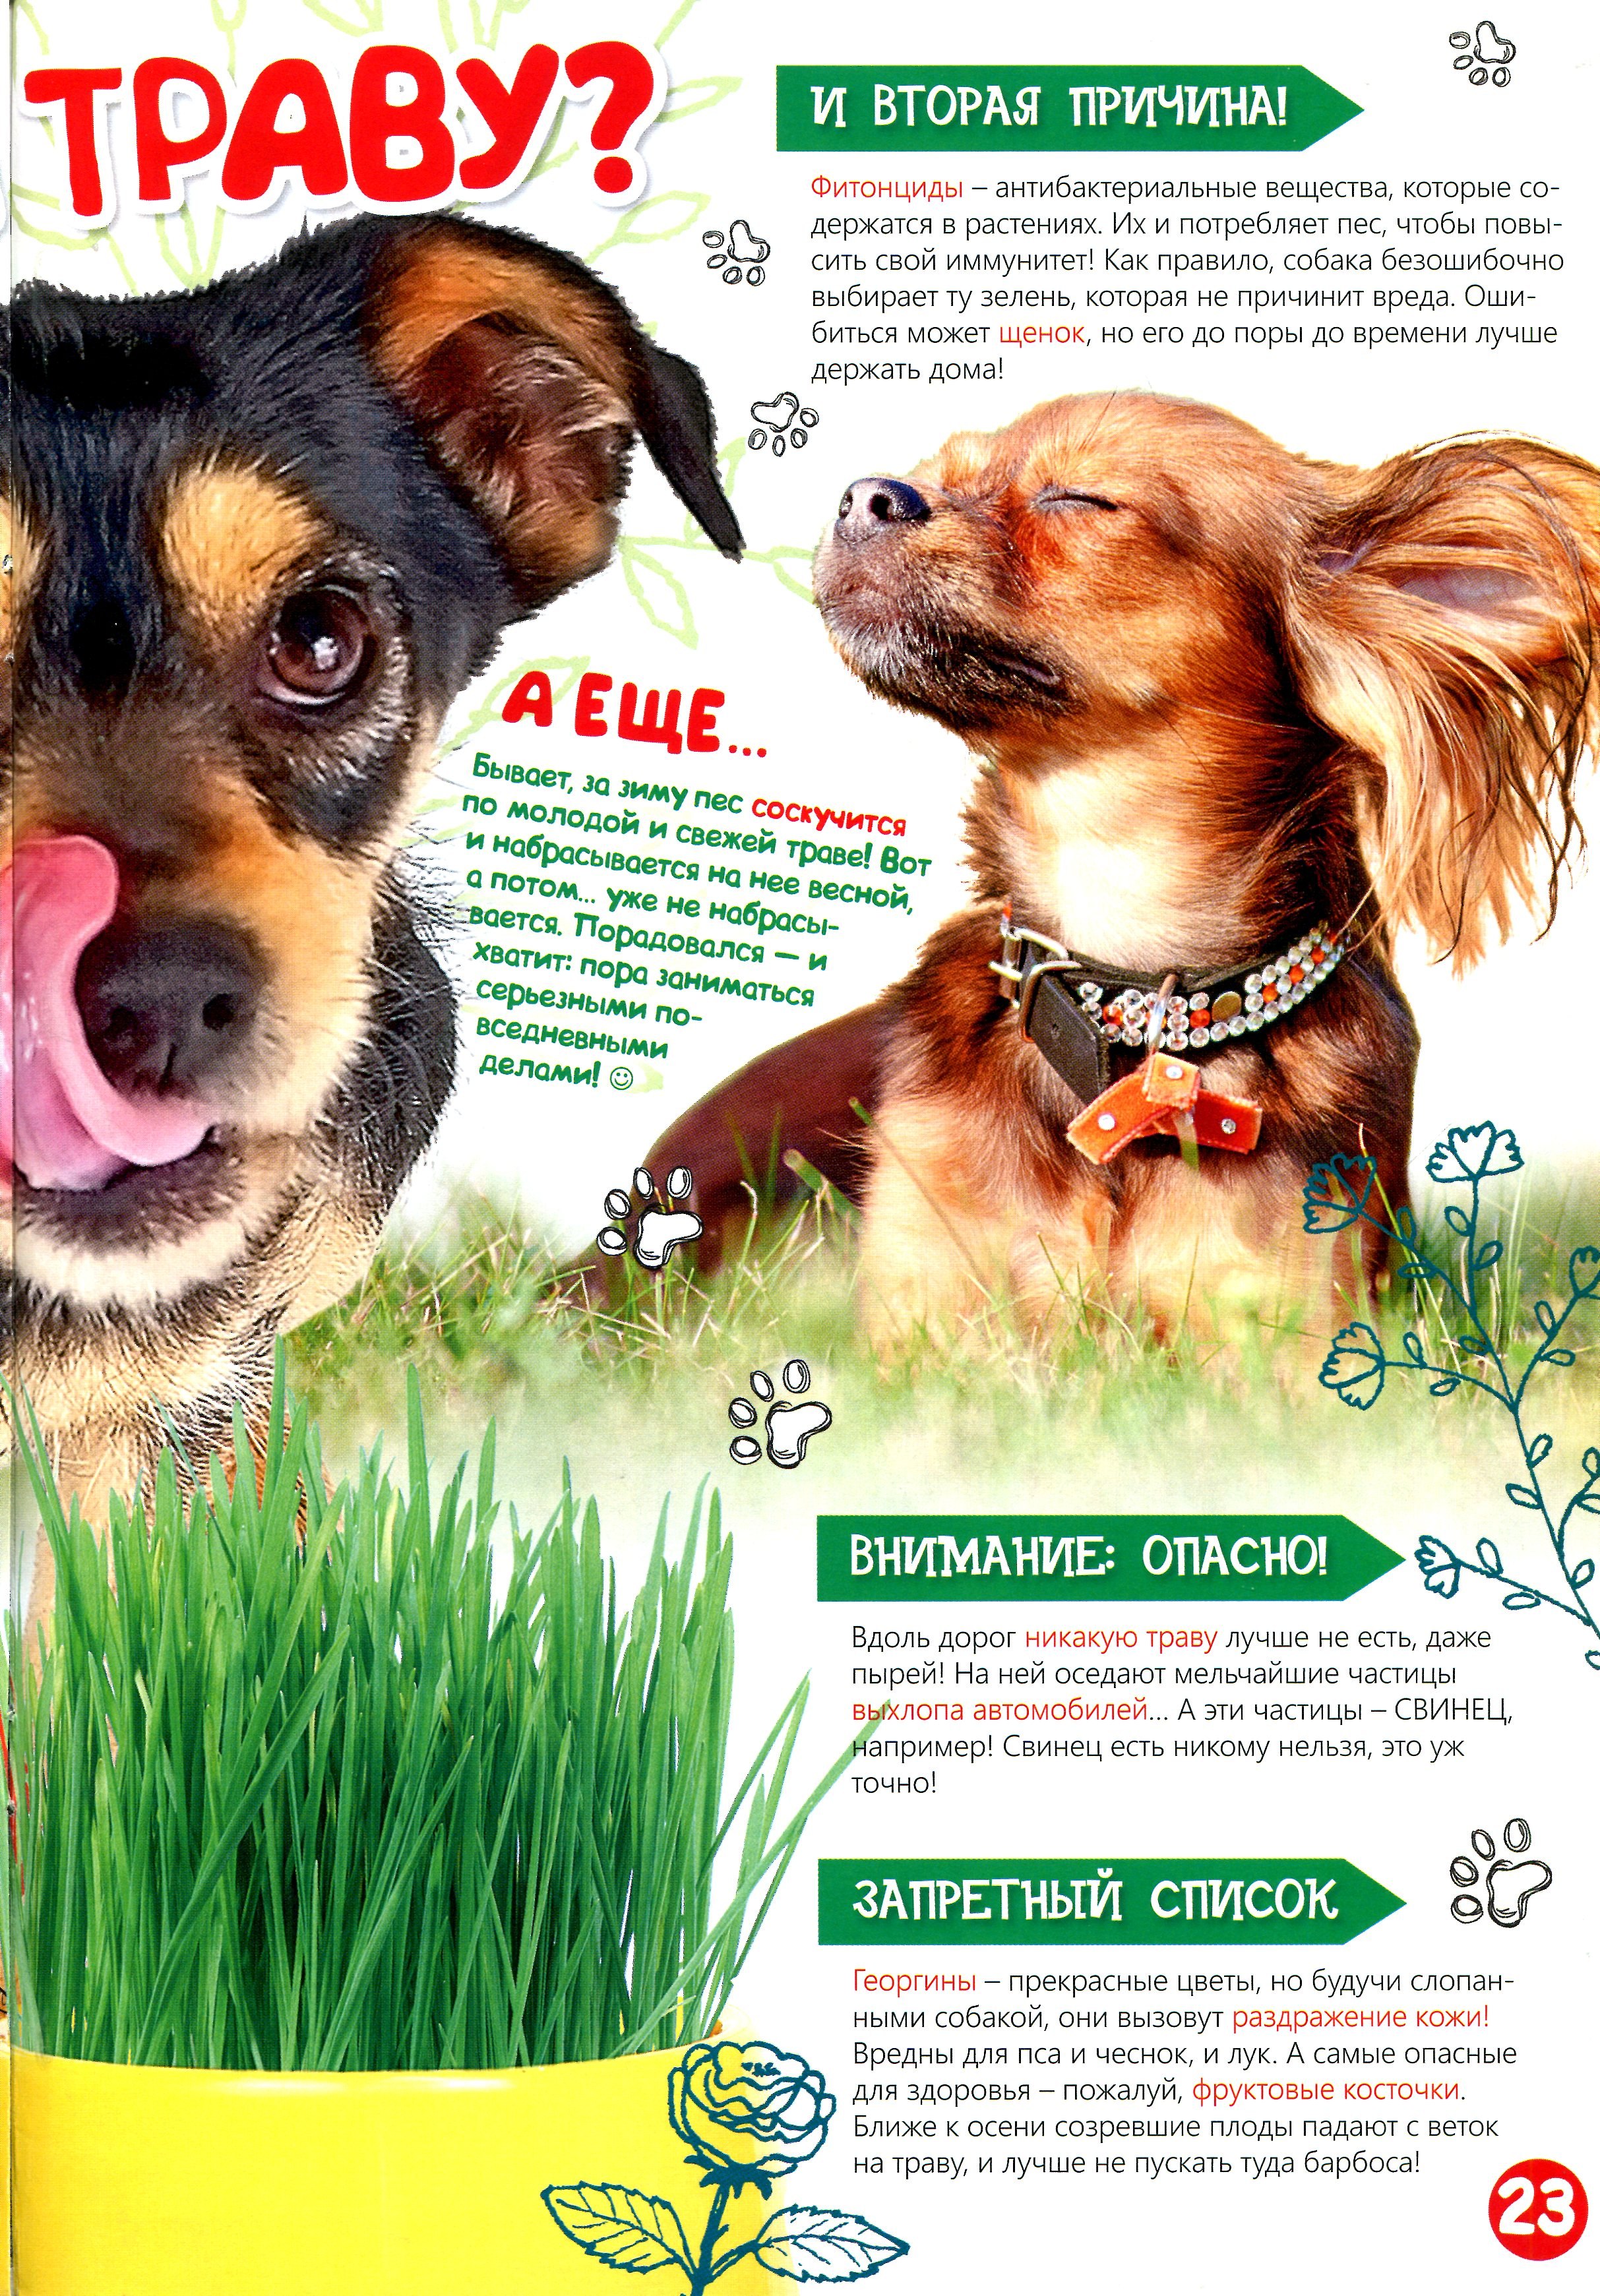 Едят ли собаки траву. Собака ест траву. Какую траву едят собаки. Почему собака ест траву. Собака на траве.